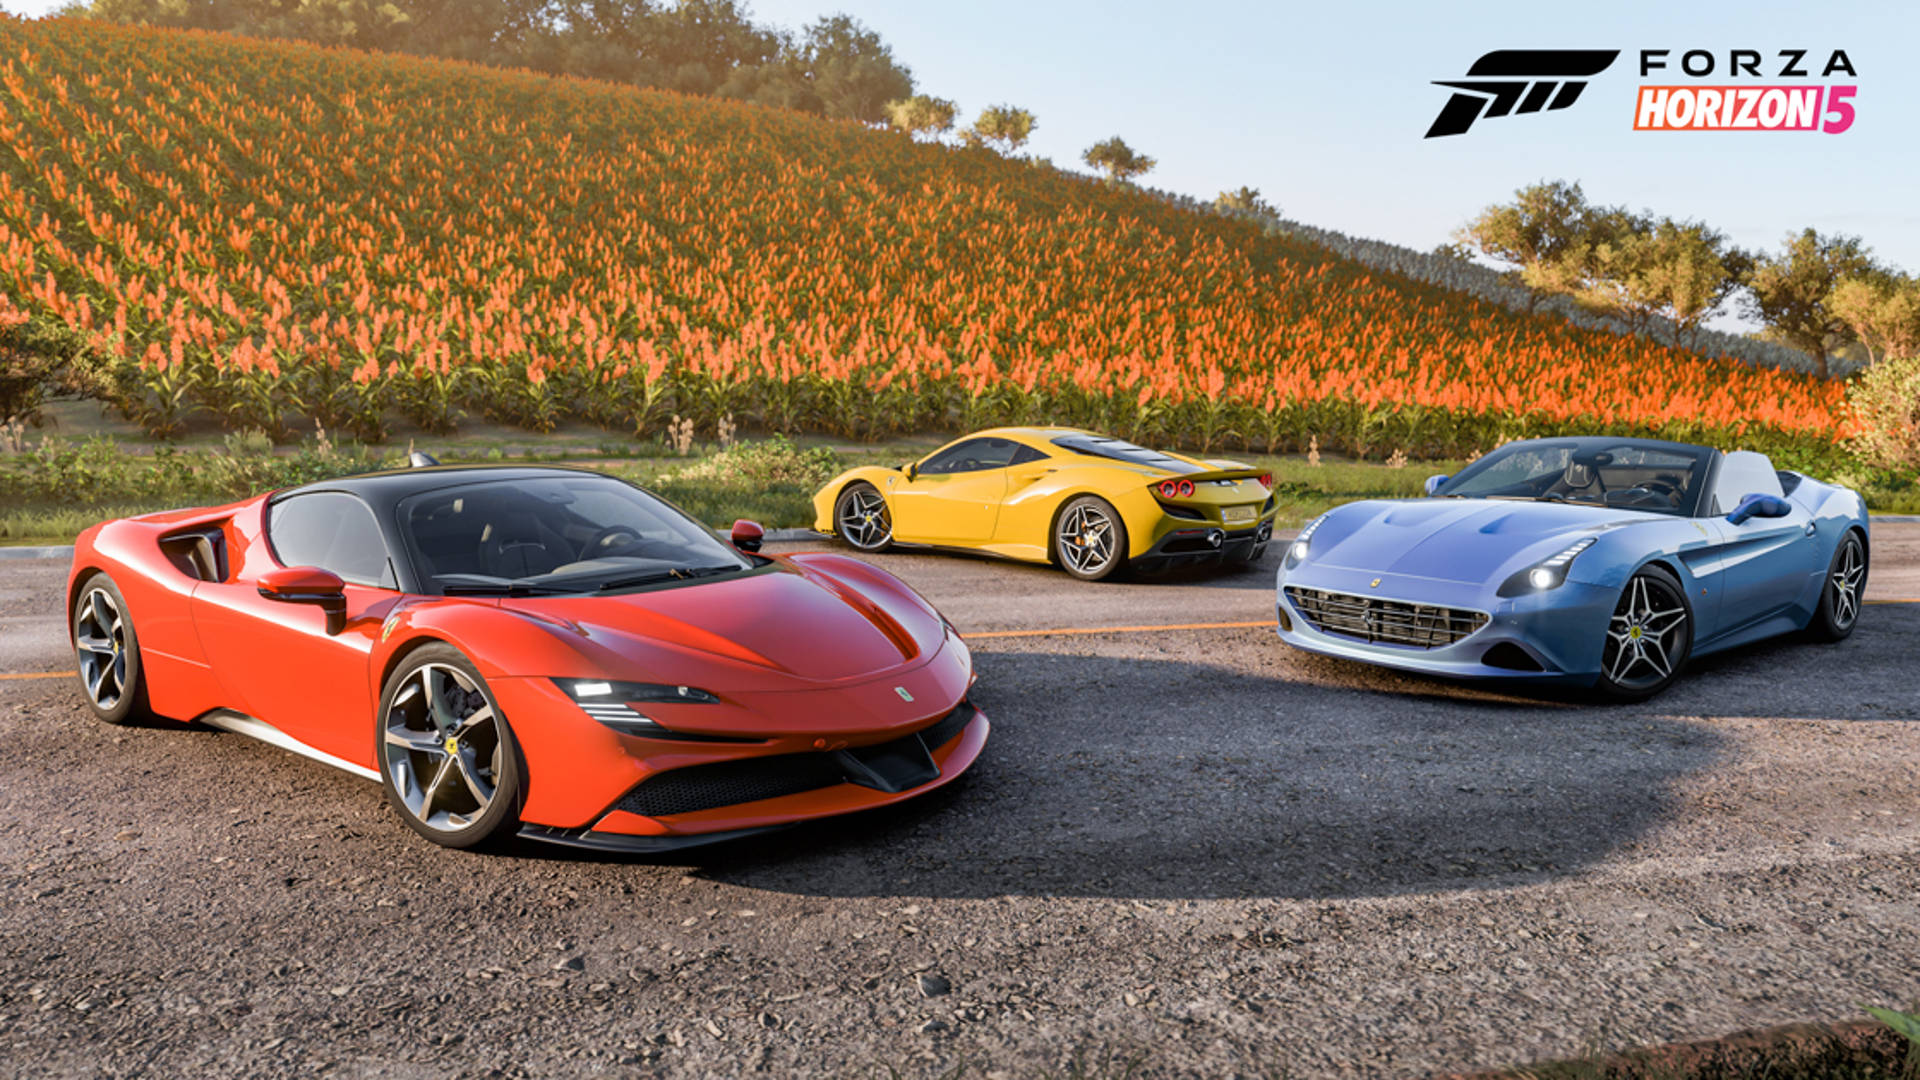 Forza Horizon 5 Series 7 Update Ferrari